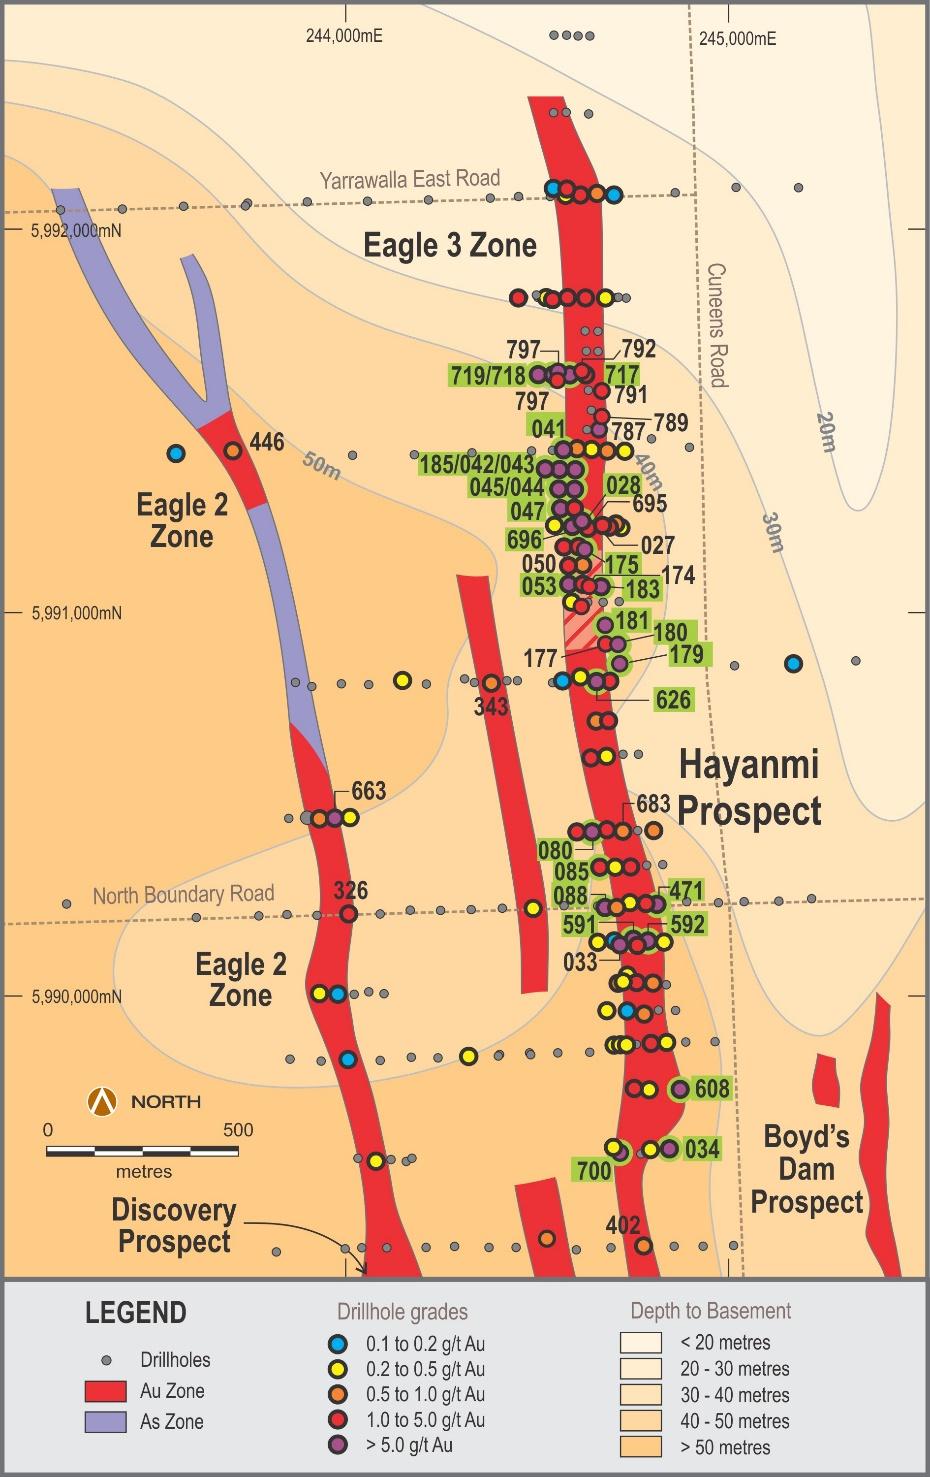 Hayanmi Trend 2.9 kms long High Grade Gold 20m @ 21.4g/t Au 22m @ 36.5g/t Au 6m @ 21.5g/t Au 9m @ 5.